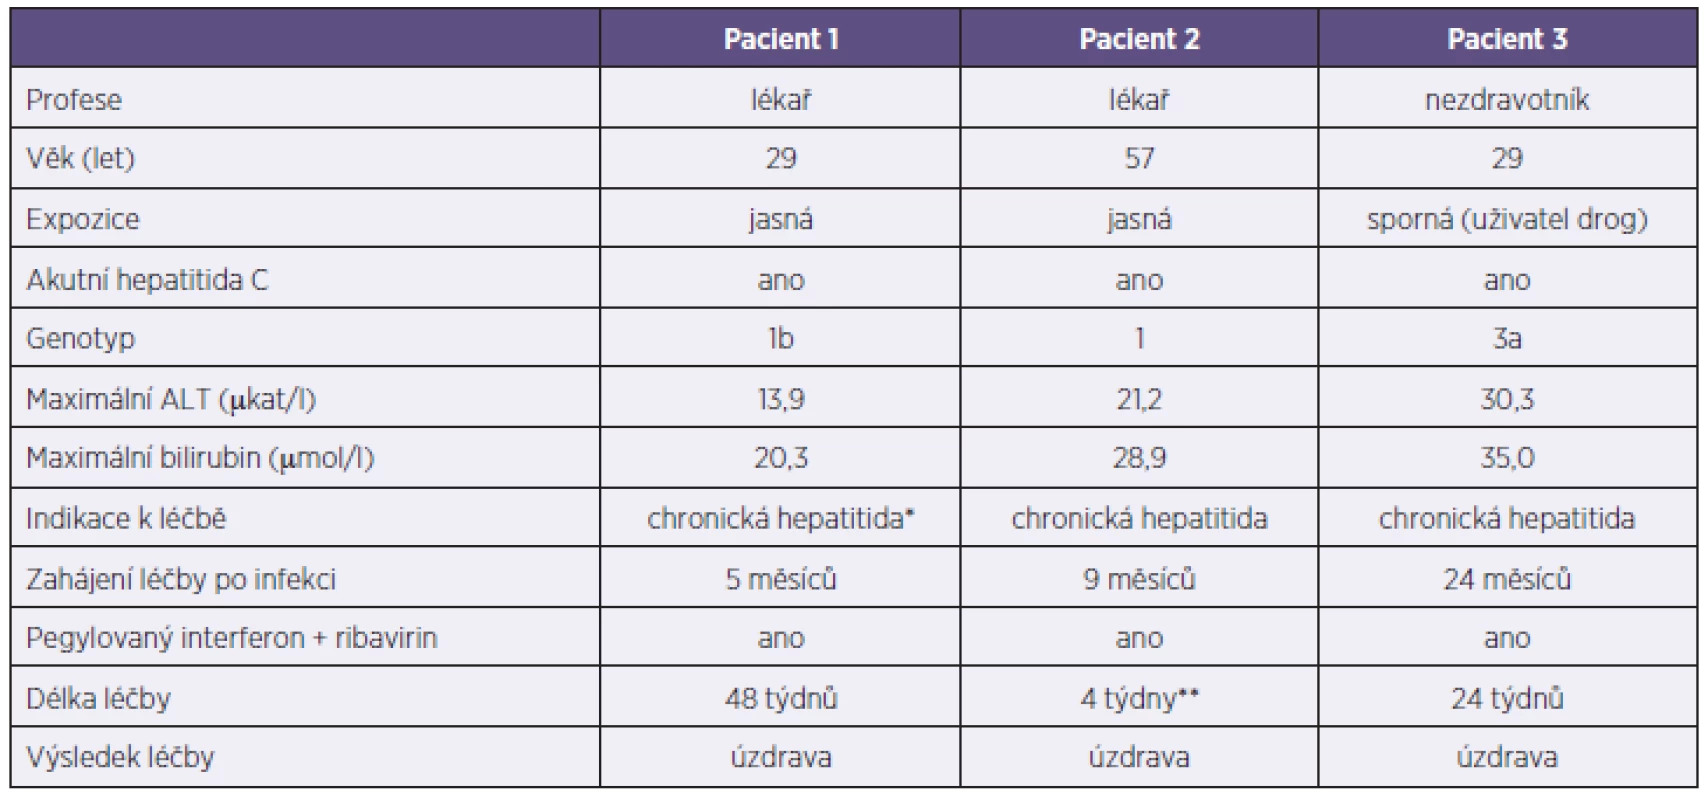 Pacienti s hepatitidou C
Table 6. Patients with hepatitis C